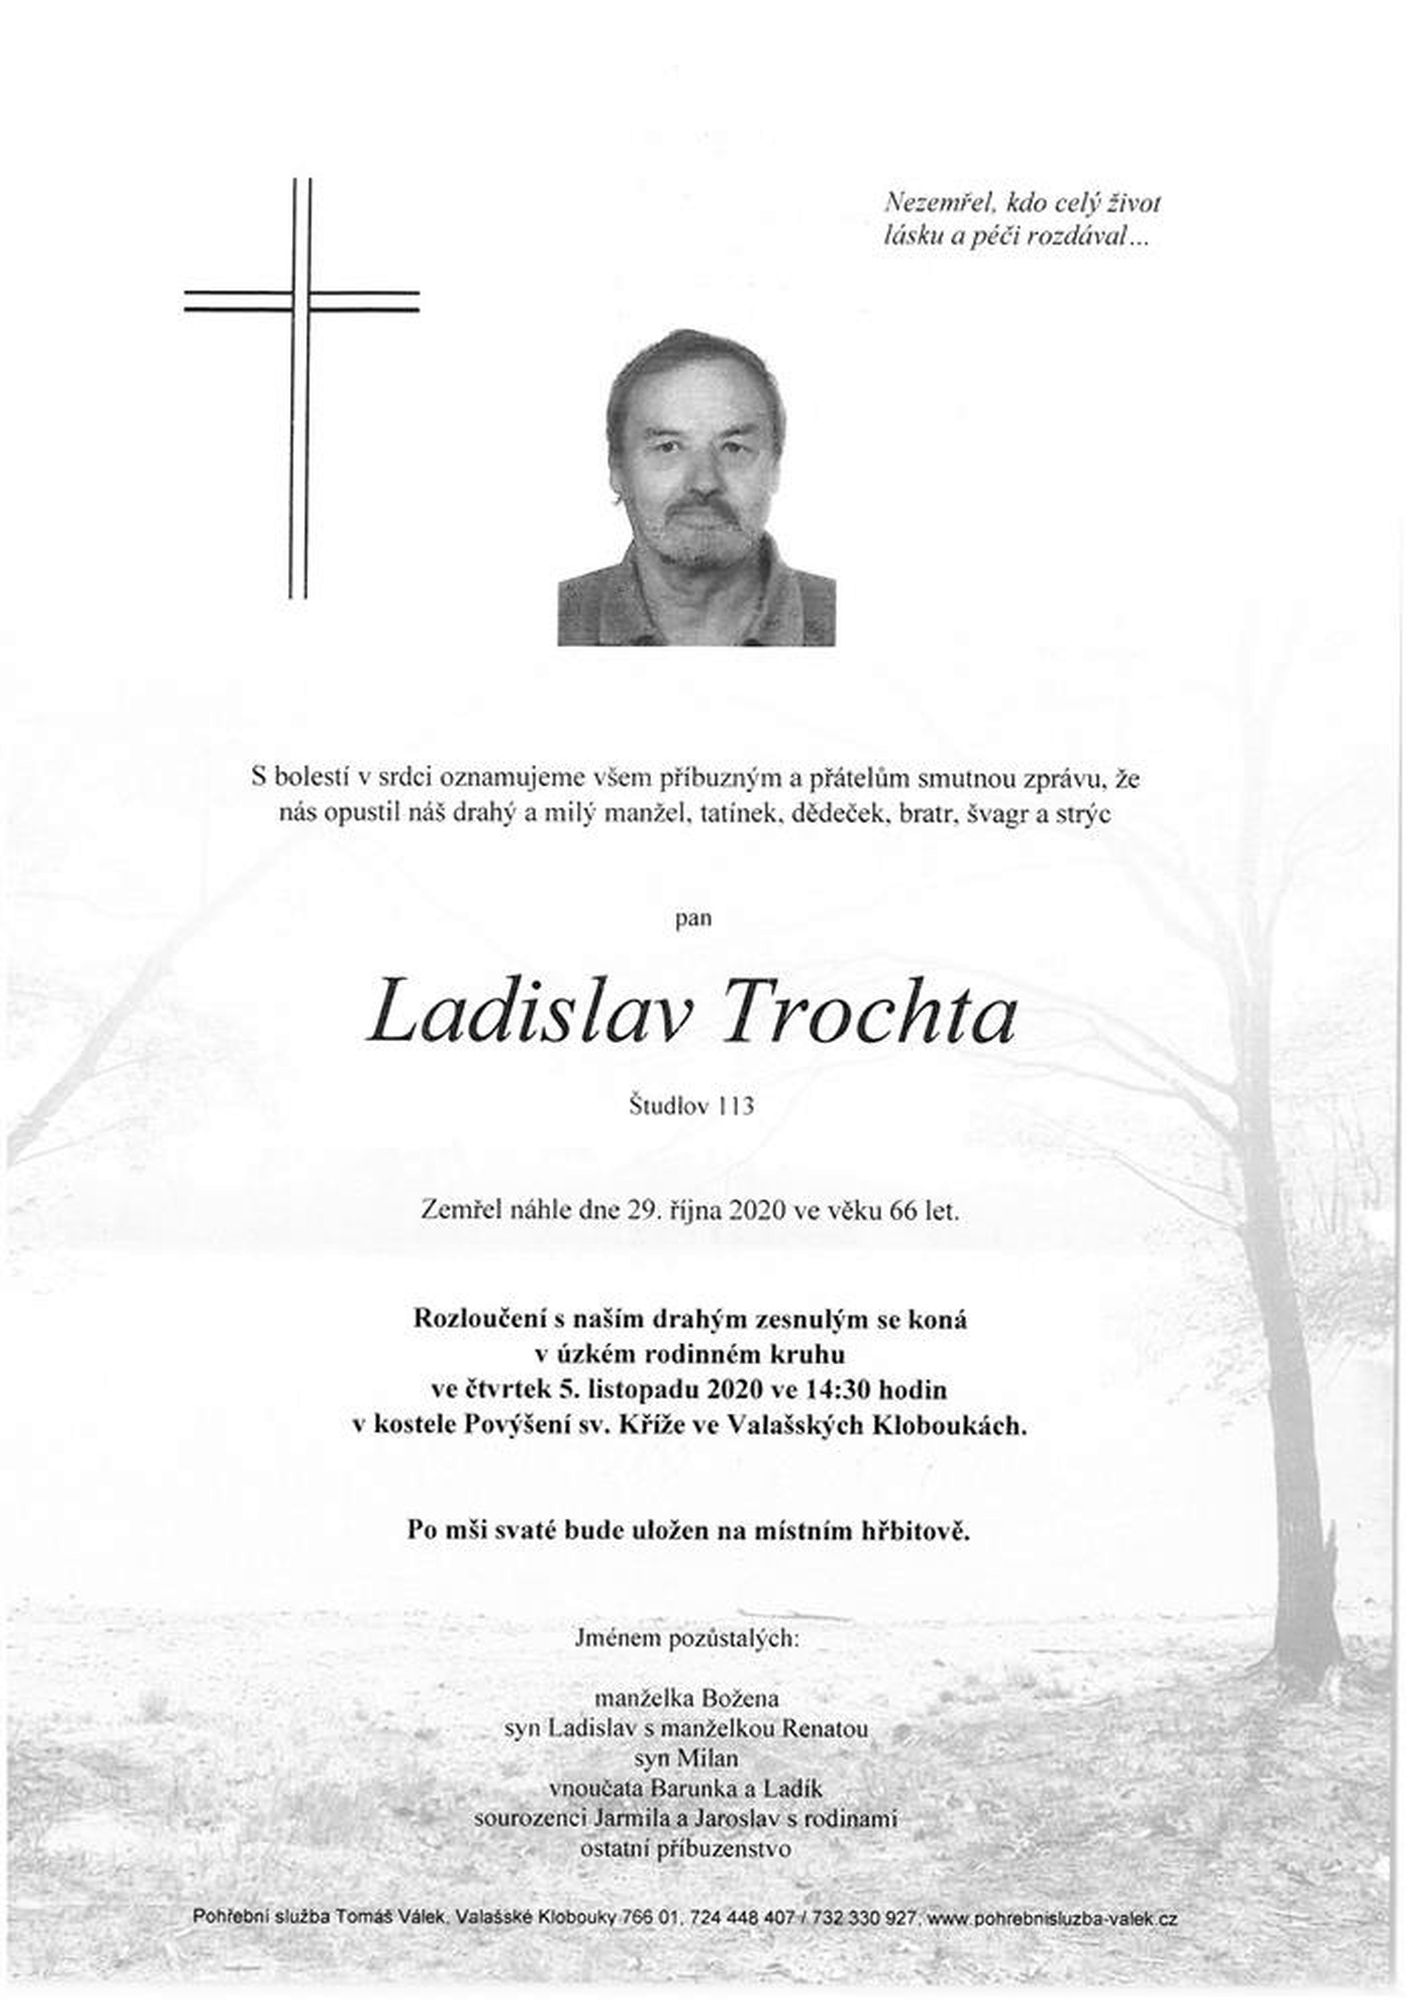 Ladislav Trochta